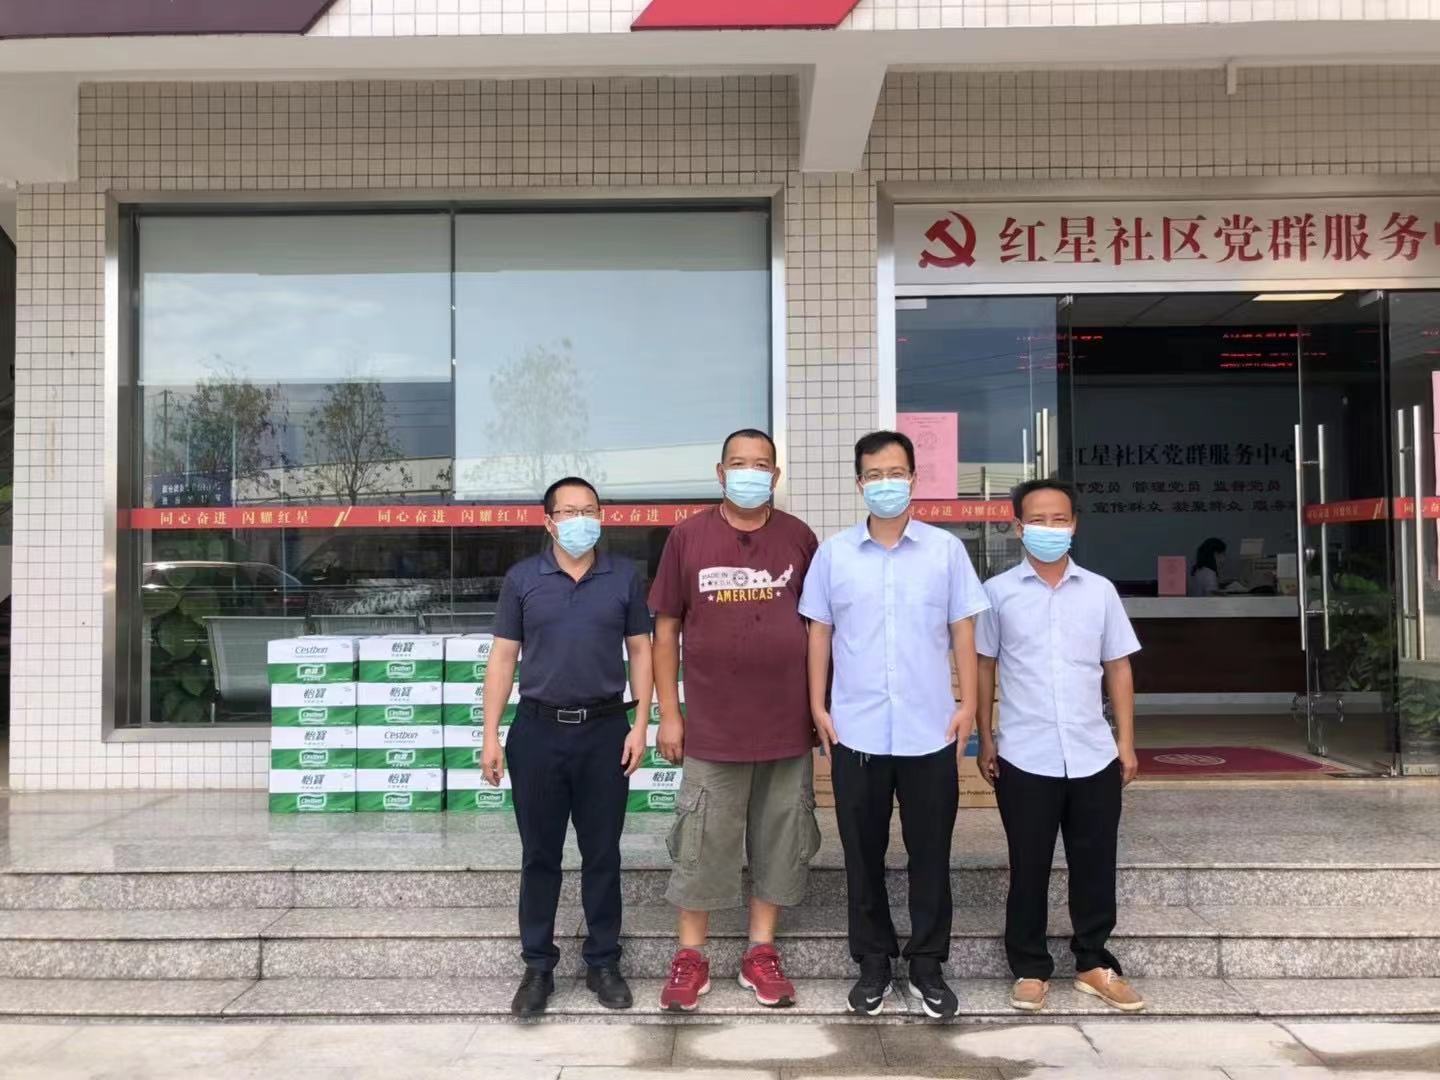 Rayson Company lucha contra la epidemia junto con todas las personas en Nanhai